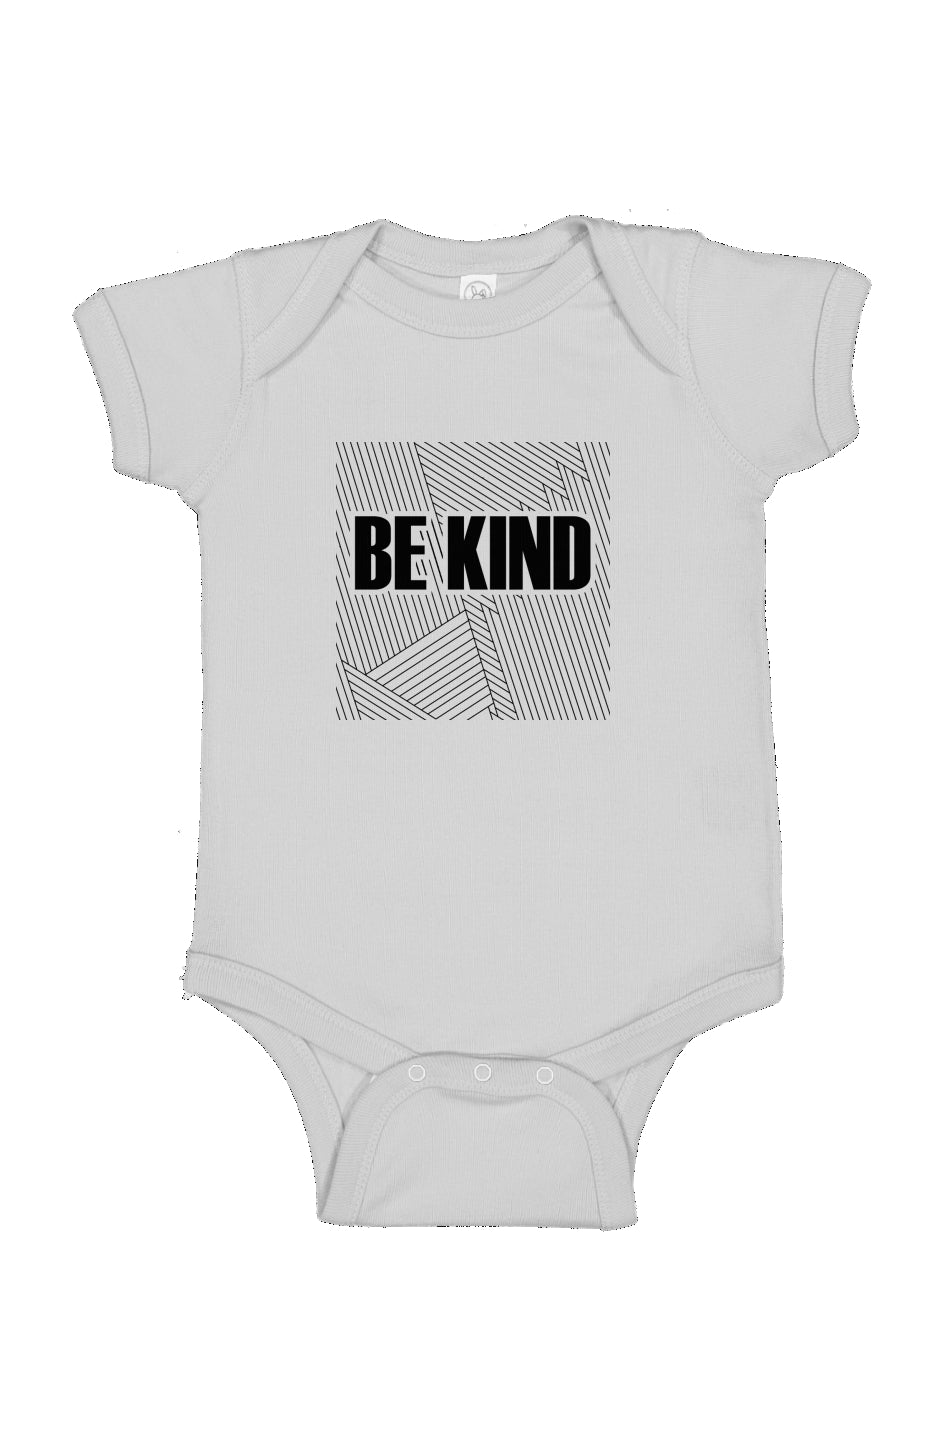 Infant “BE KIND” Bodysuit